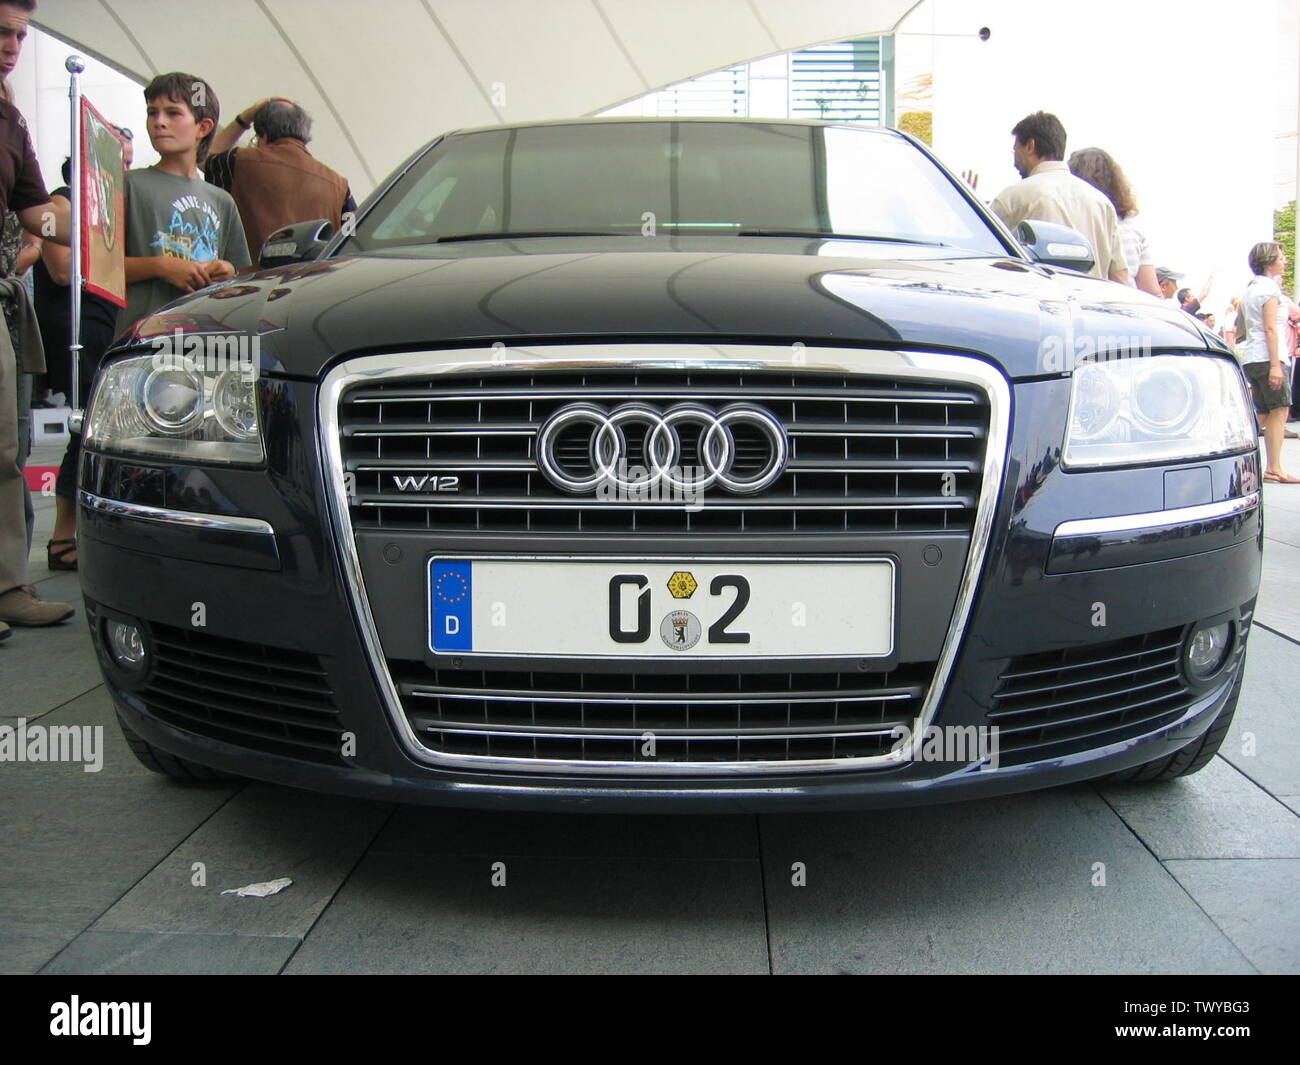 Der Audi A8 W12 der Bundeskanzlerin Frau Dr. Merkel mit dem Kennzeichen 0-2.; 25 August 2007; Transferred from de.pedia to Commons. where it was uploaded by the author; Christoph F. Siekermann (Siekermann at de.pedia); Stock Photo